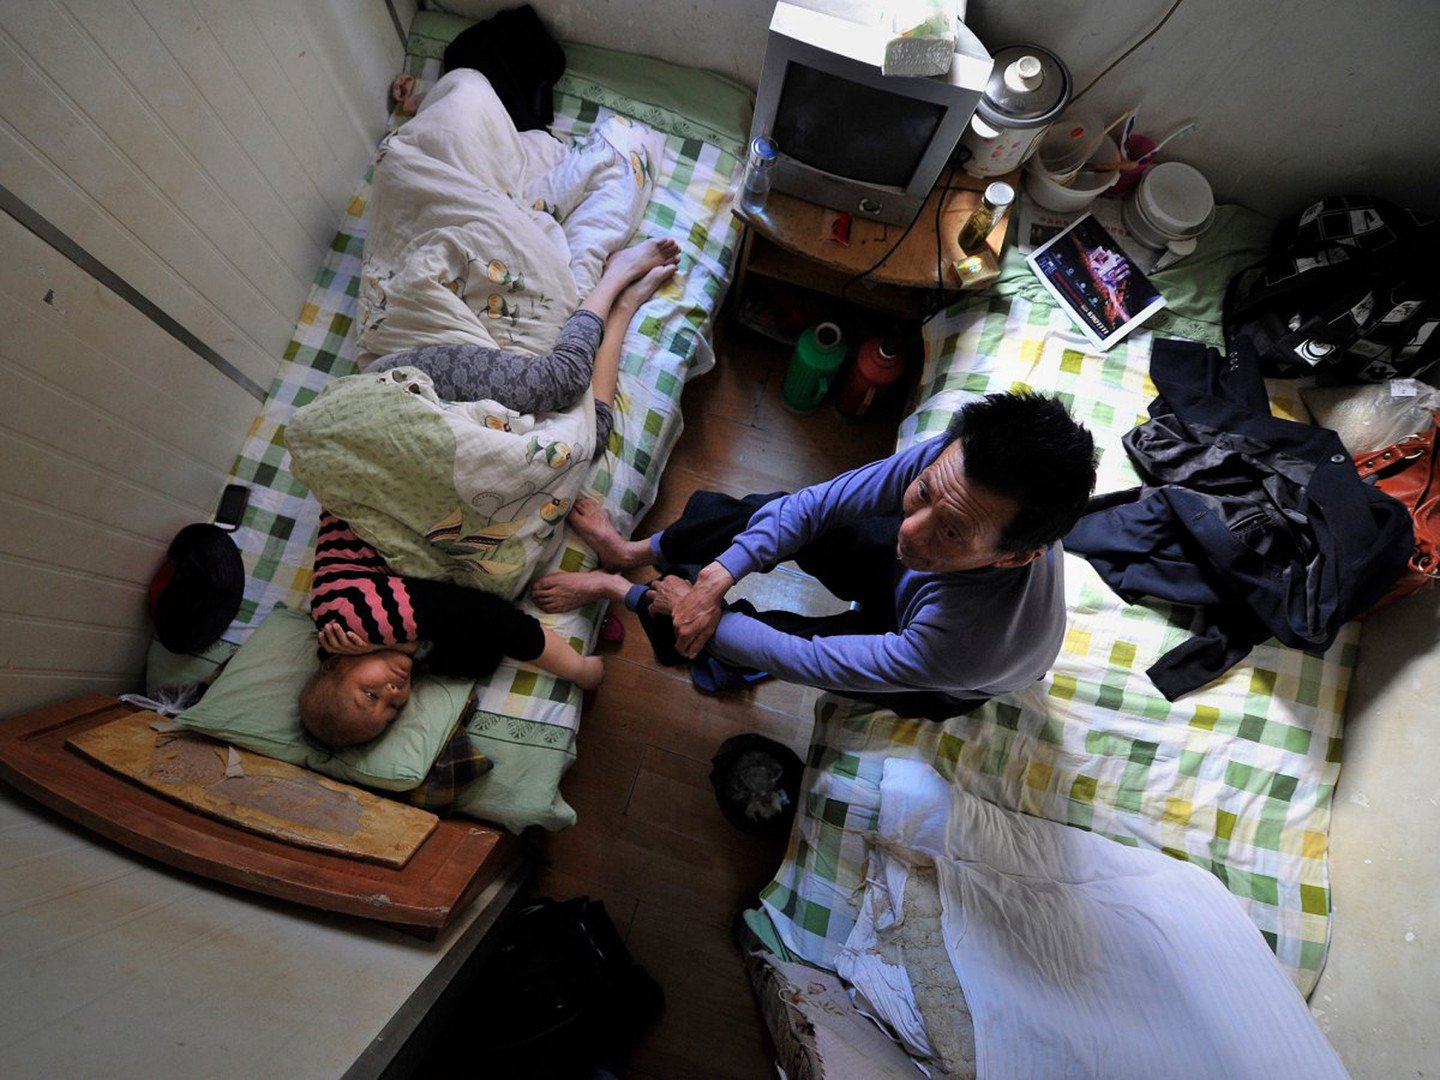  مرضى لا يستطيعون استئجار غرفة في المستشفى فيضطرون إلى استئجار غرف في مبنى سكني مجاور للمستشفى، الصين